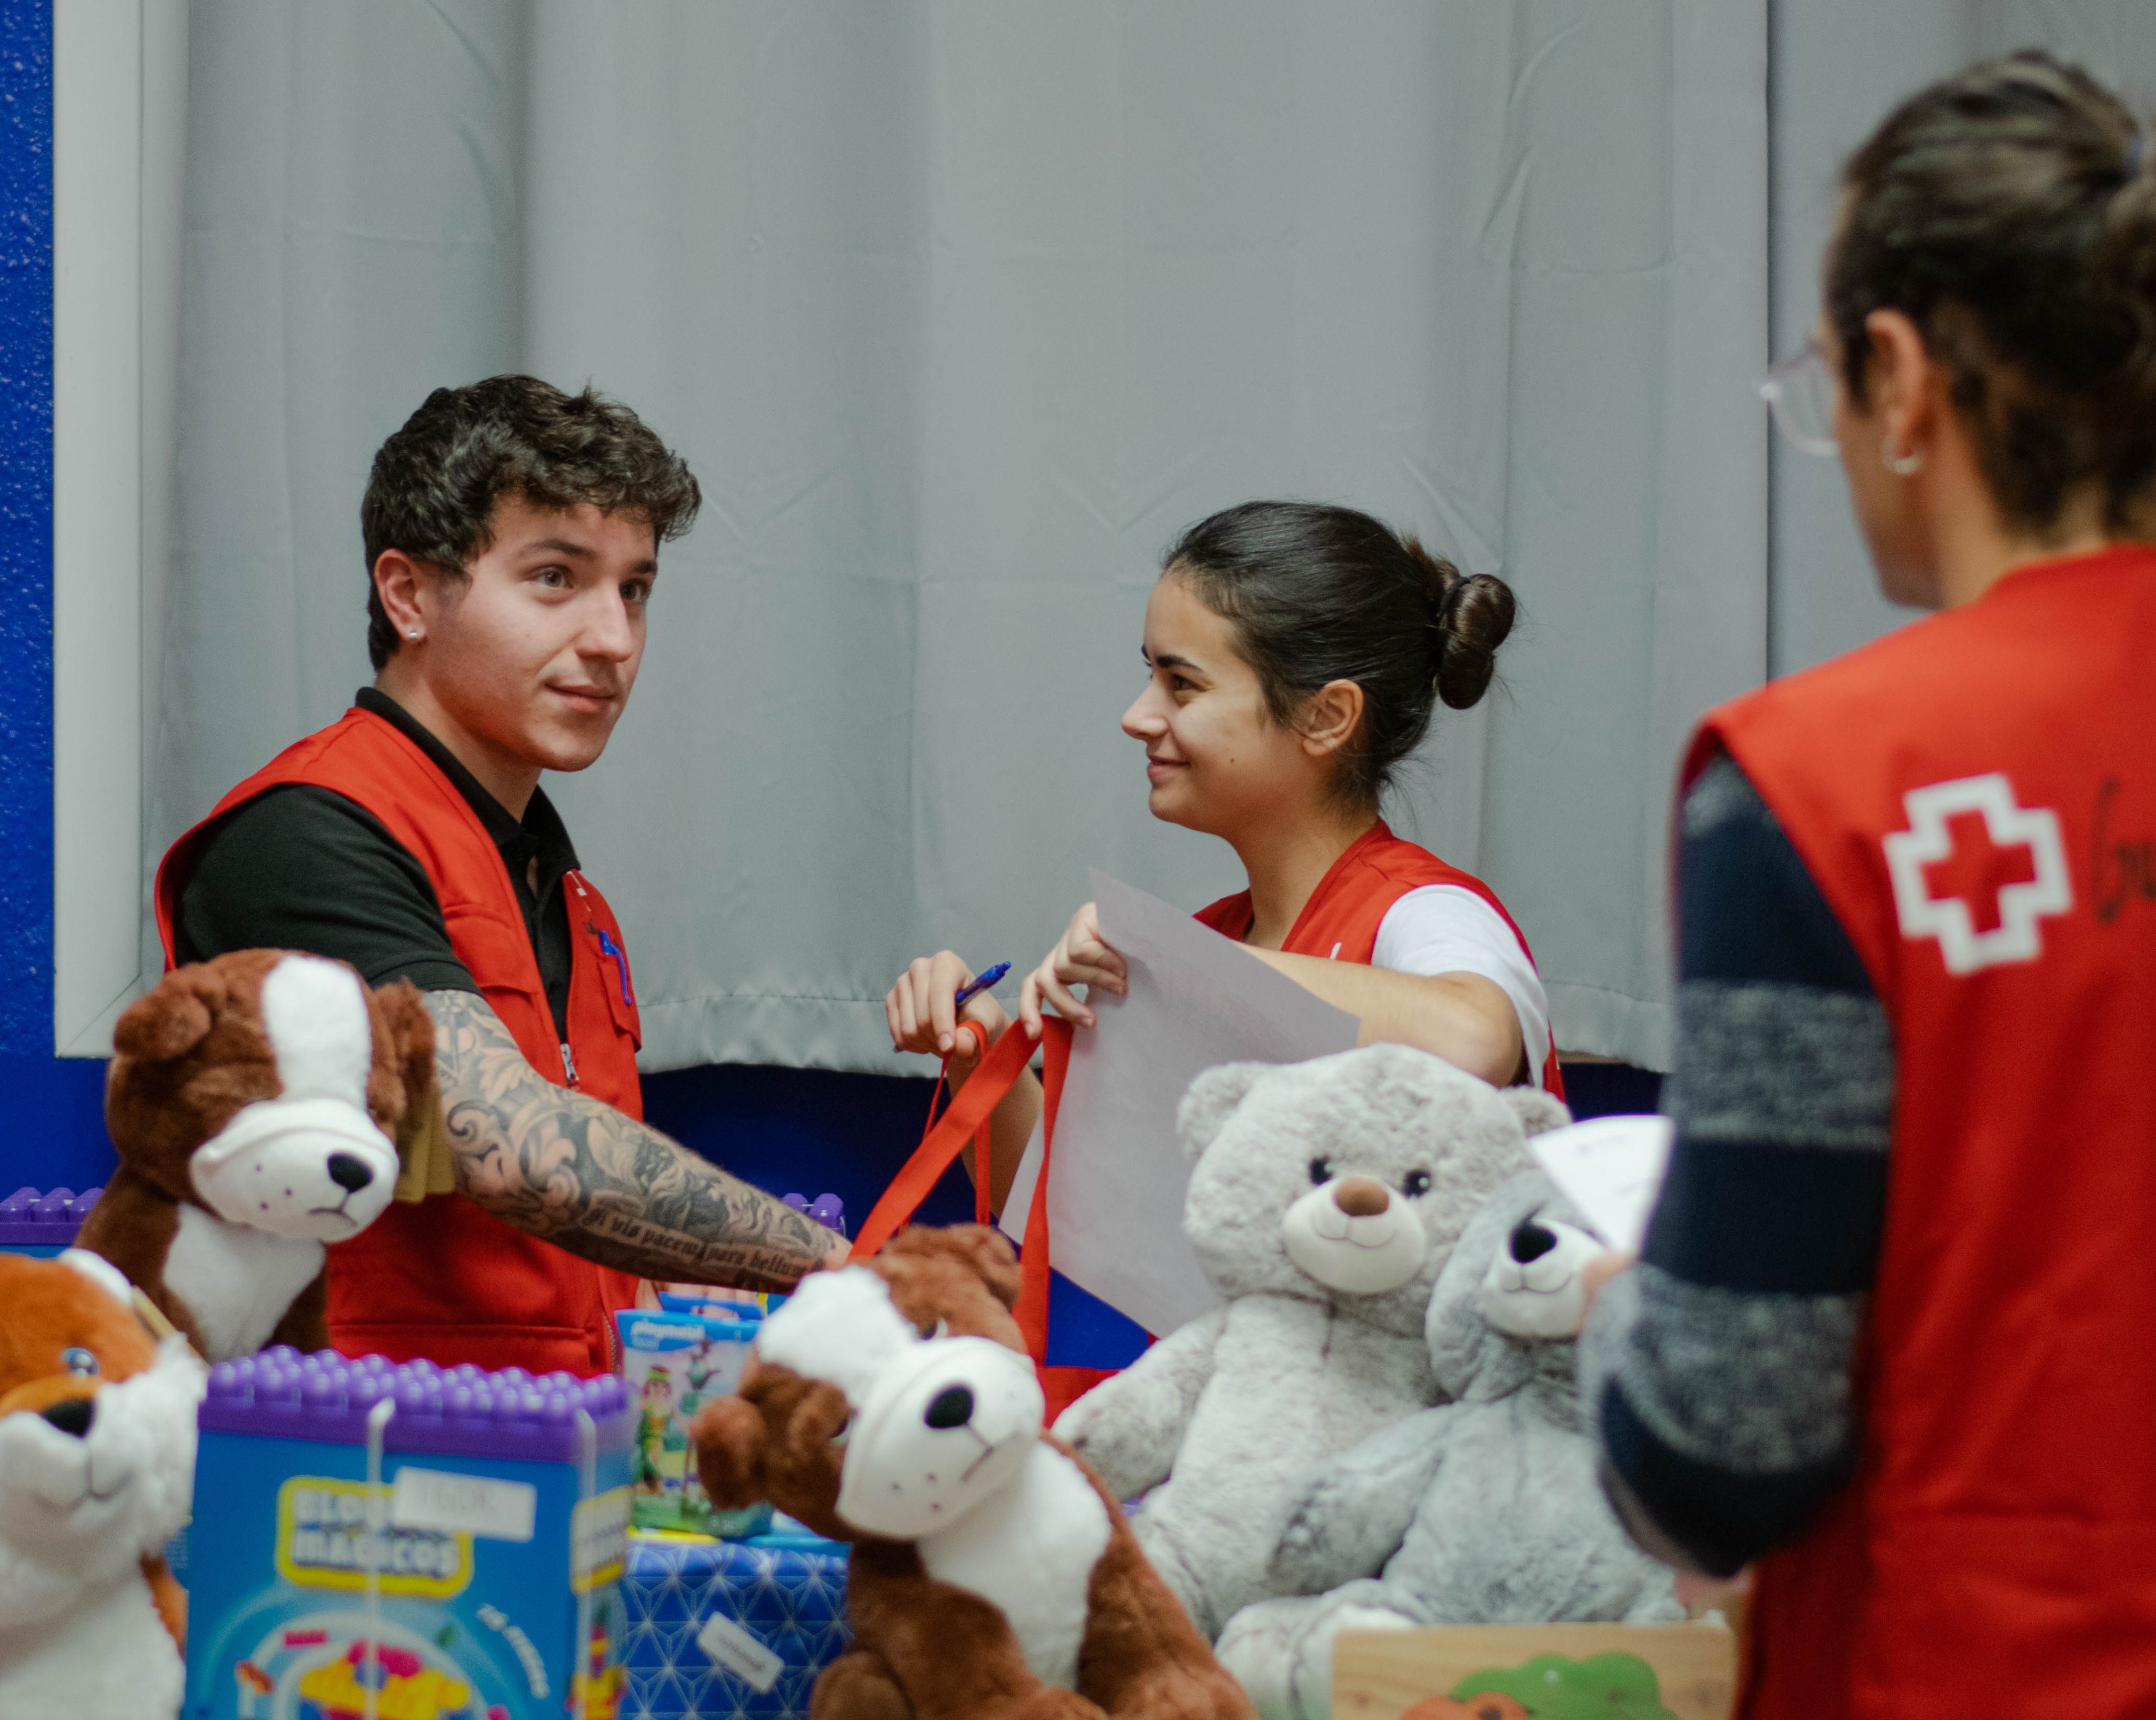 Cruz Roja Juventud entrega 42.000 juguetes en la campaña de ‘El juguete educativo’ más formativa de su historia